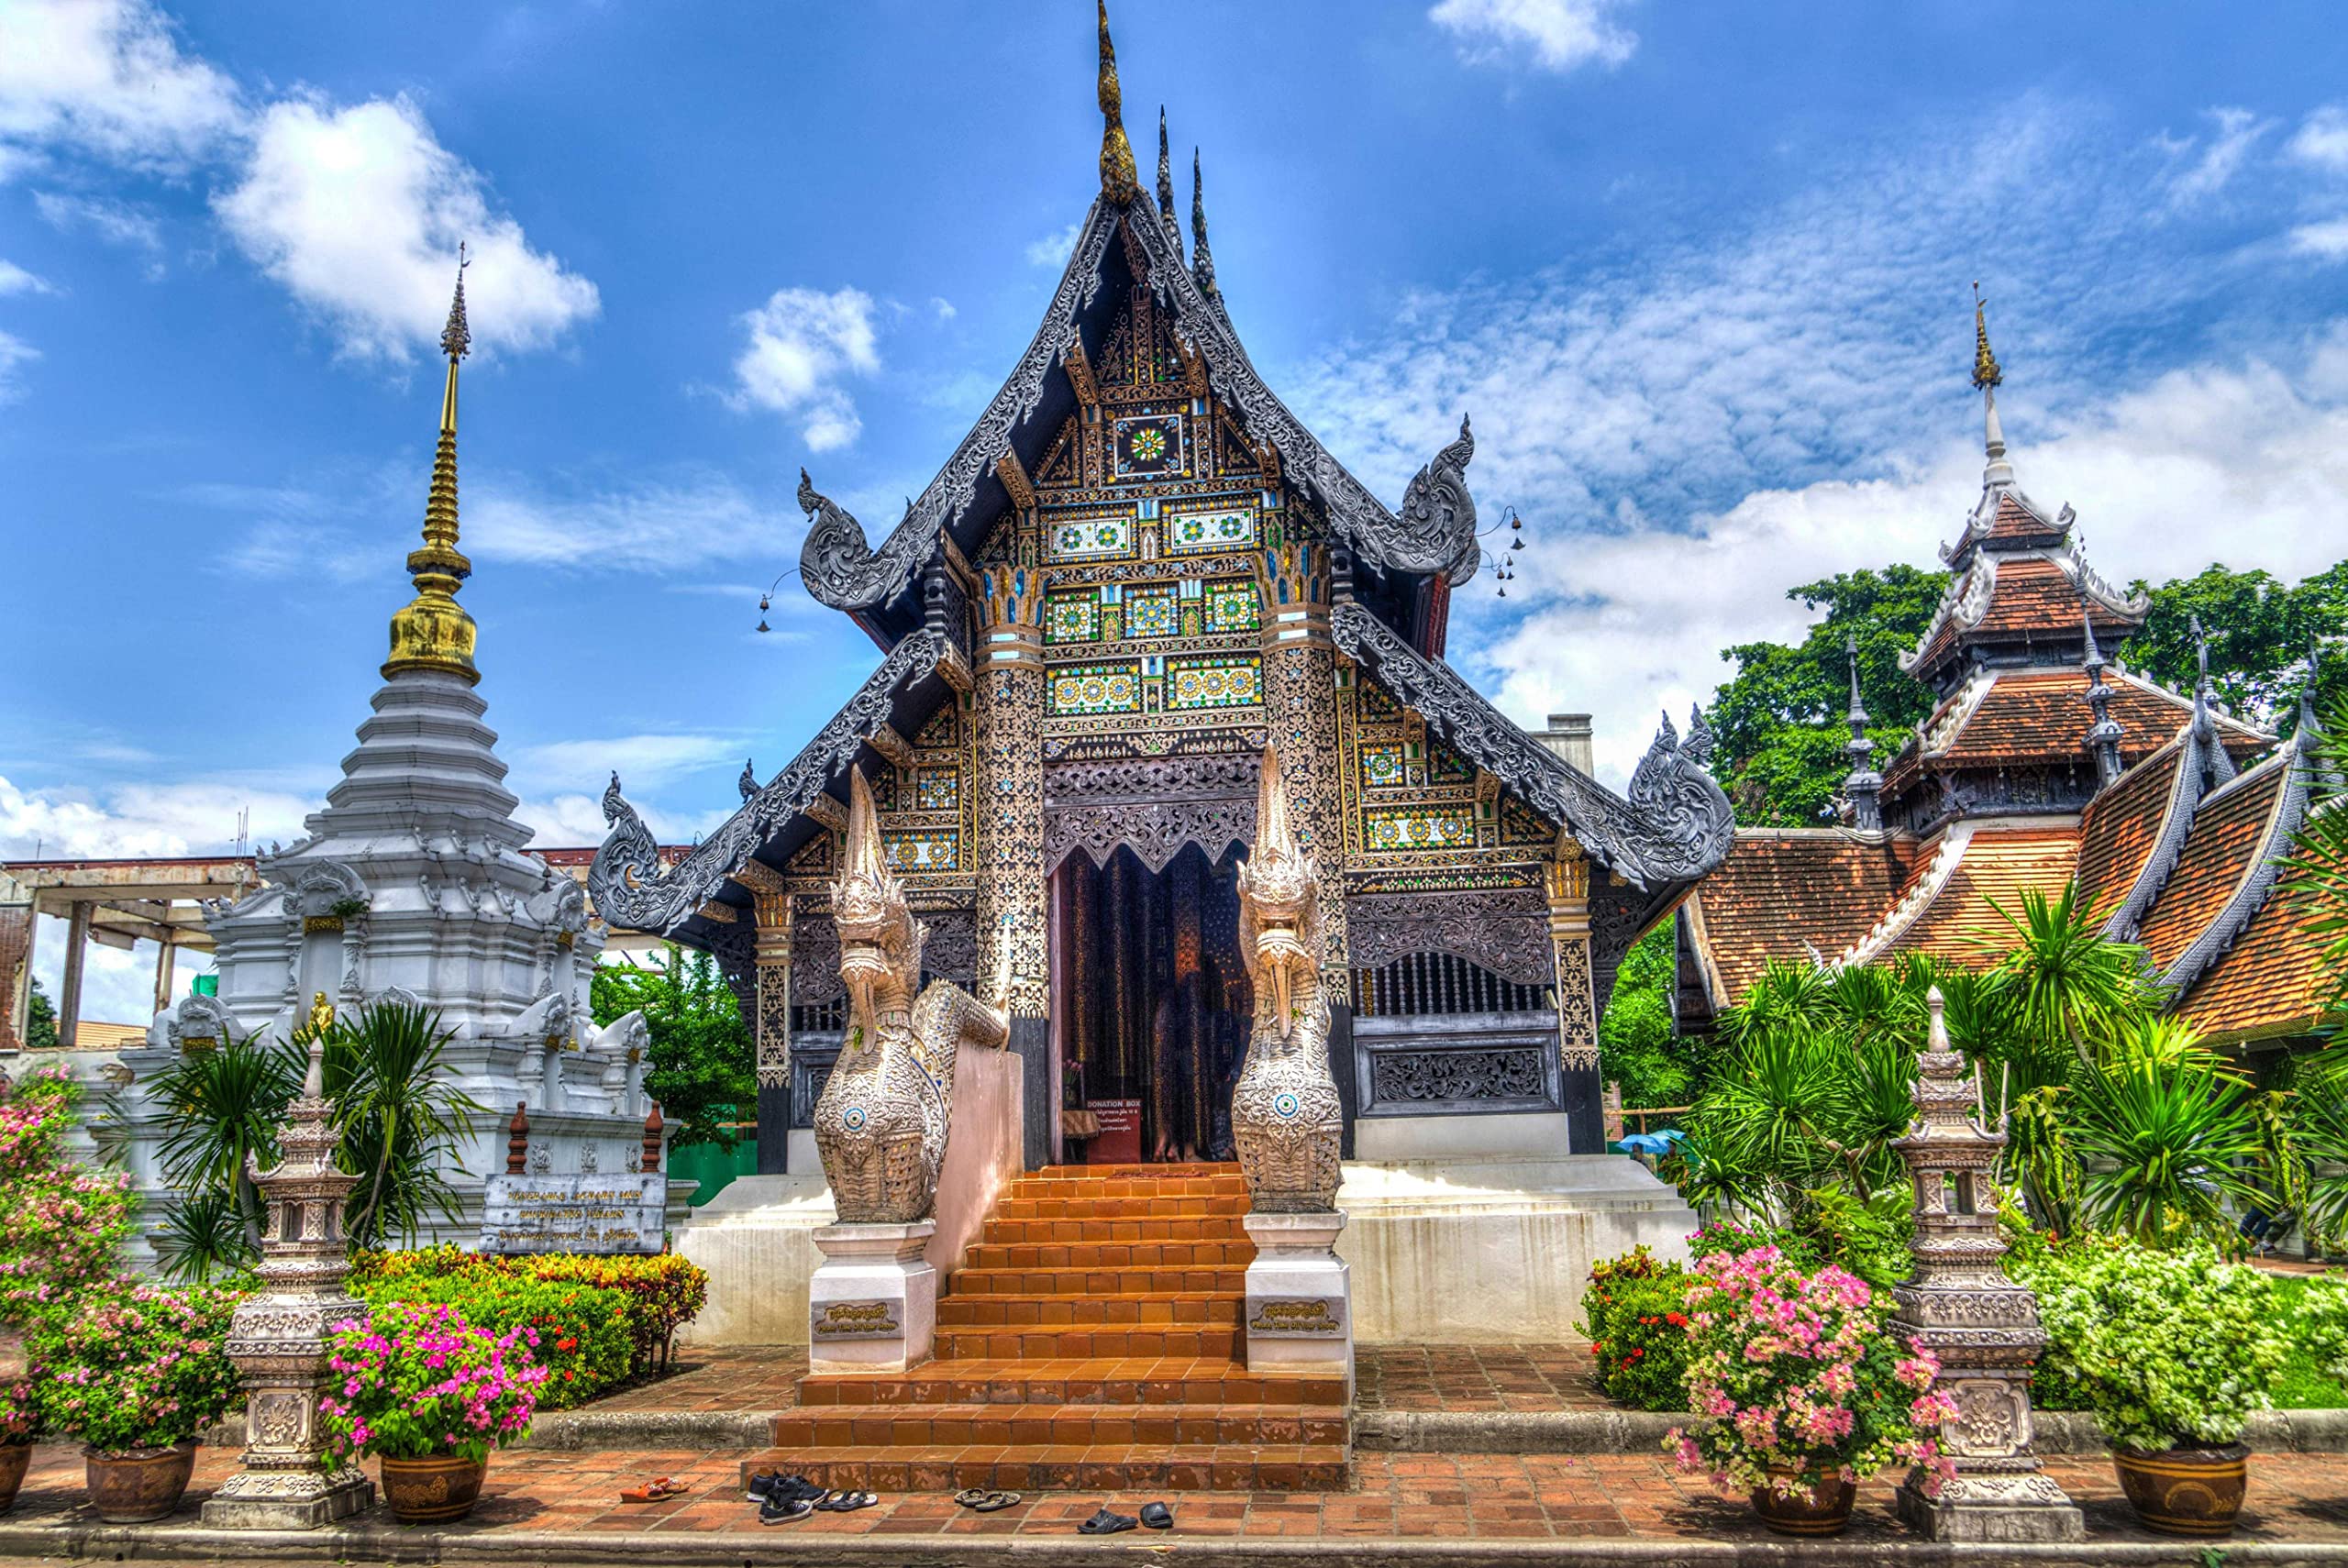 Tempel in Thailand Puzzle 1000 Teile Reisepuzzle mit hochwertiger Puzzleaufbewahrung: Karton und wiederverschließbarer Beutel Puzzlemaße 50x70CM